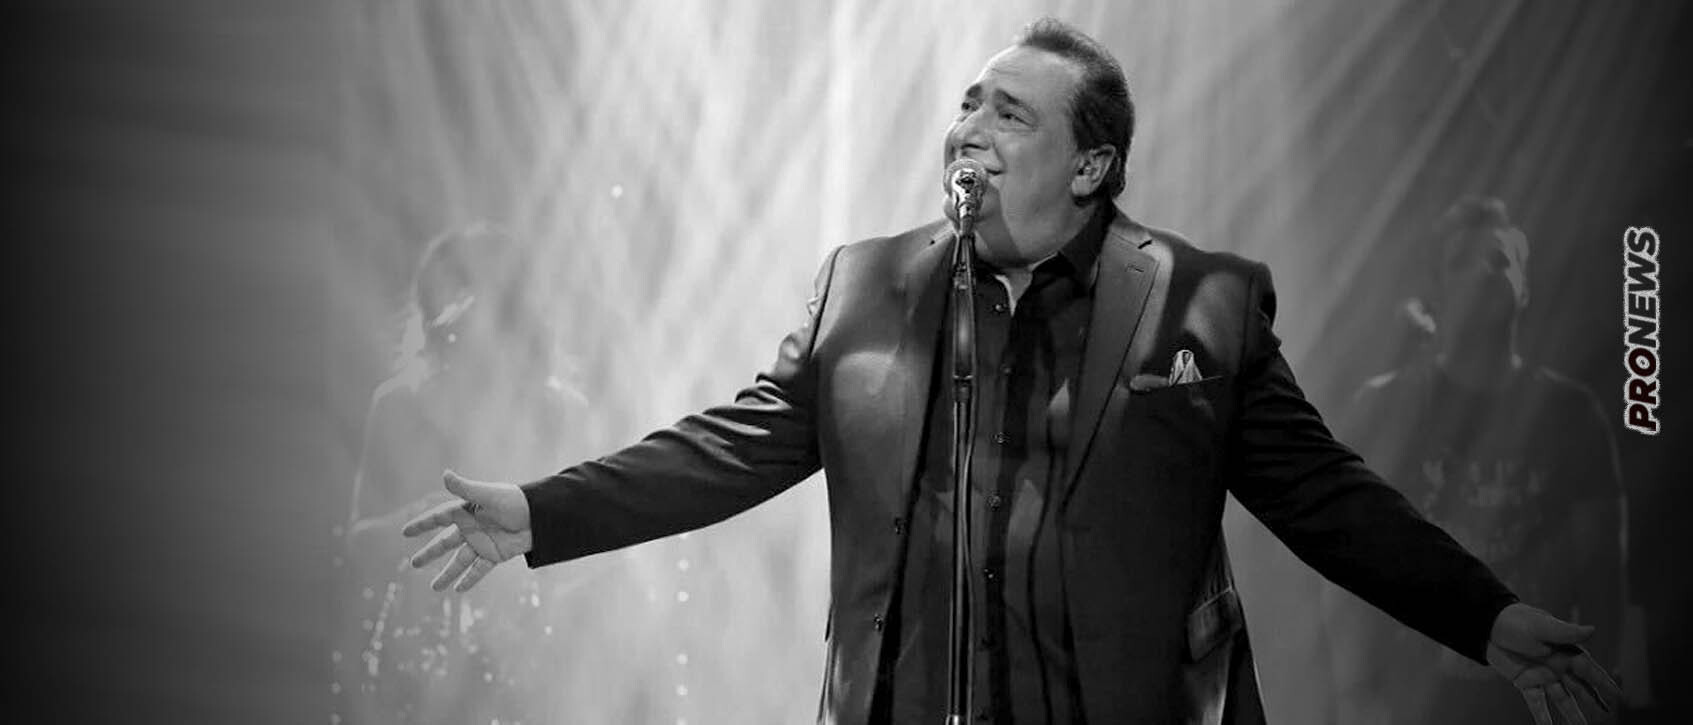 Πέθανε ο μεγάλος λαϊκός τραγουδιστής Βασίλης Καρράς